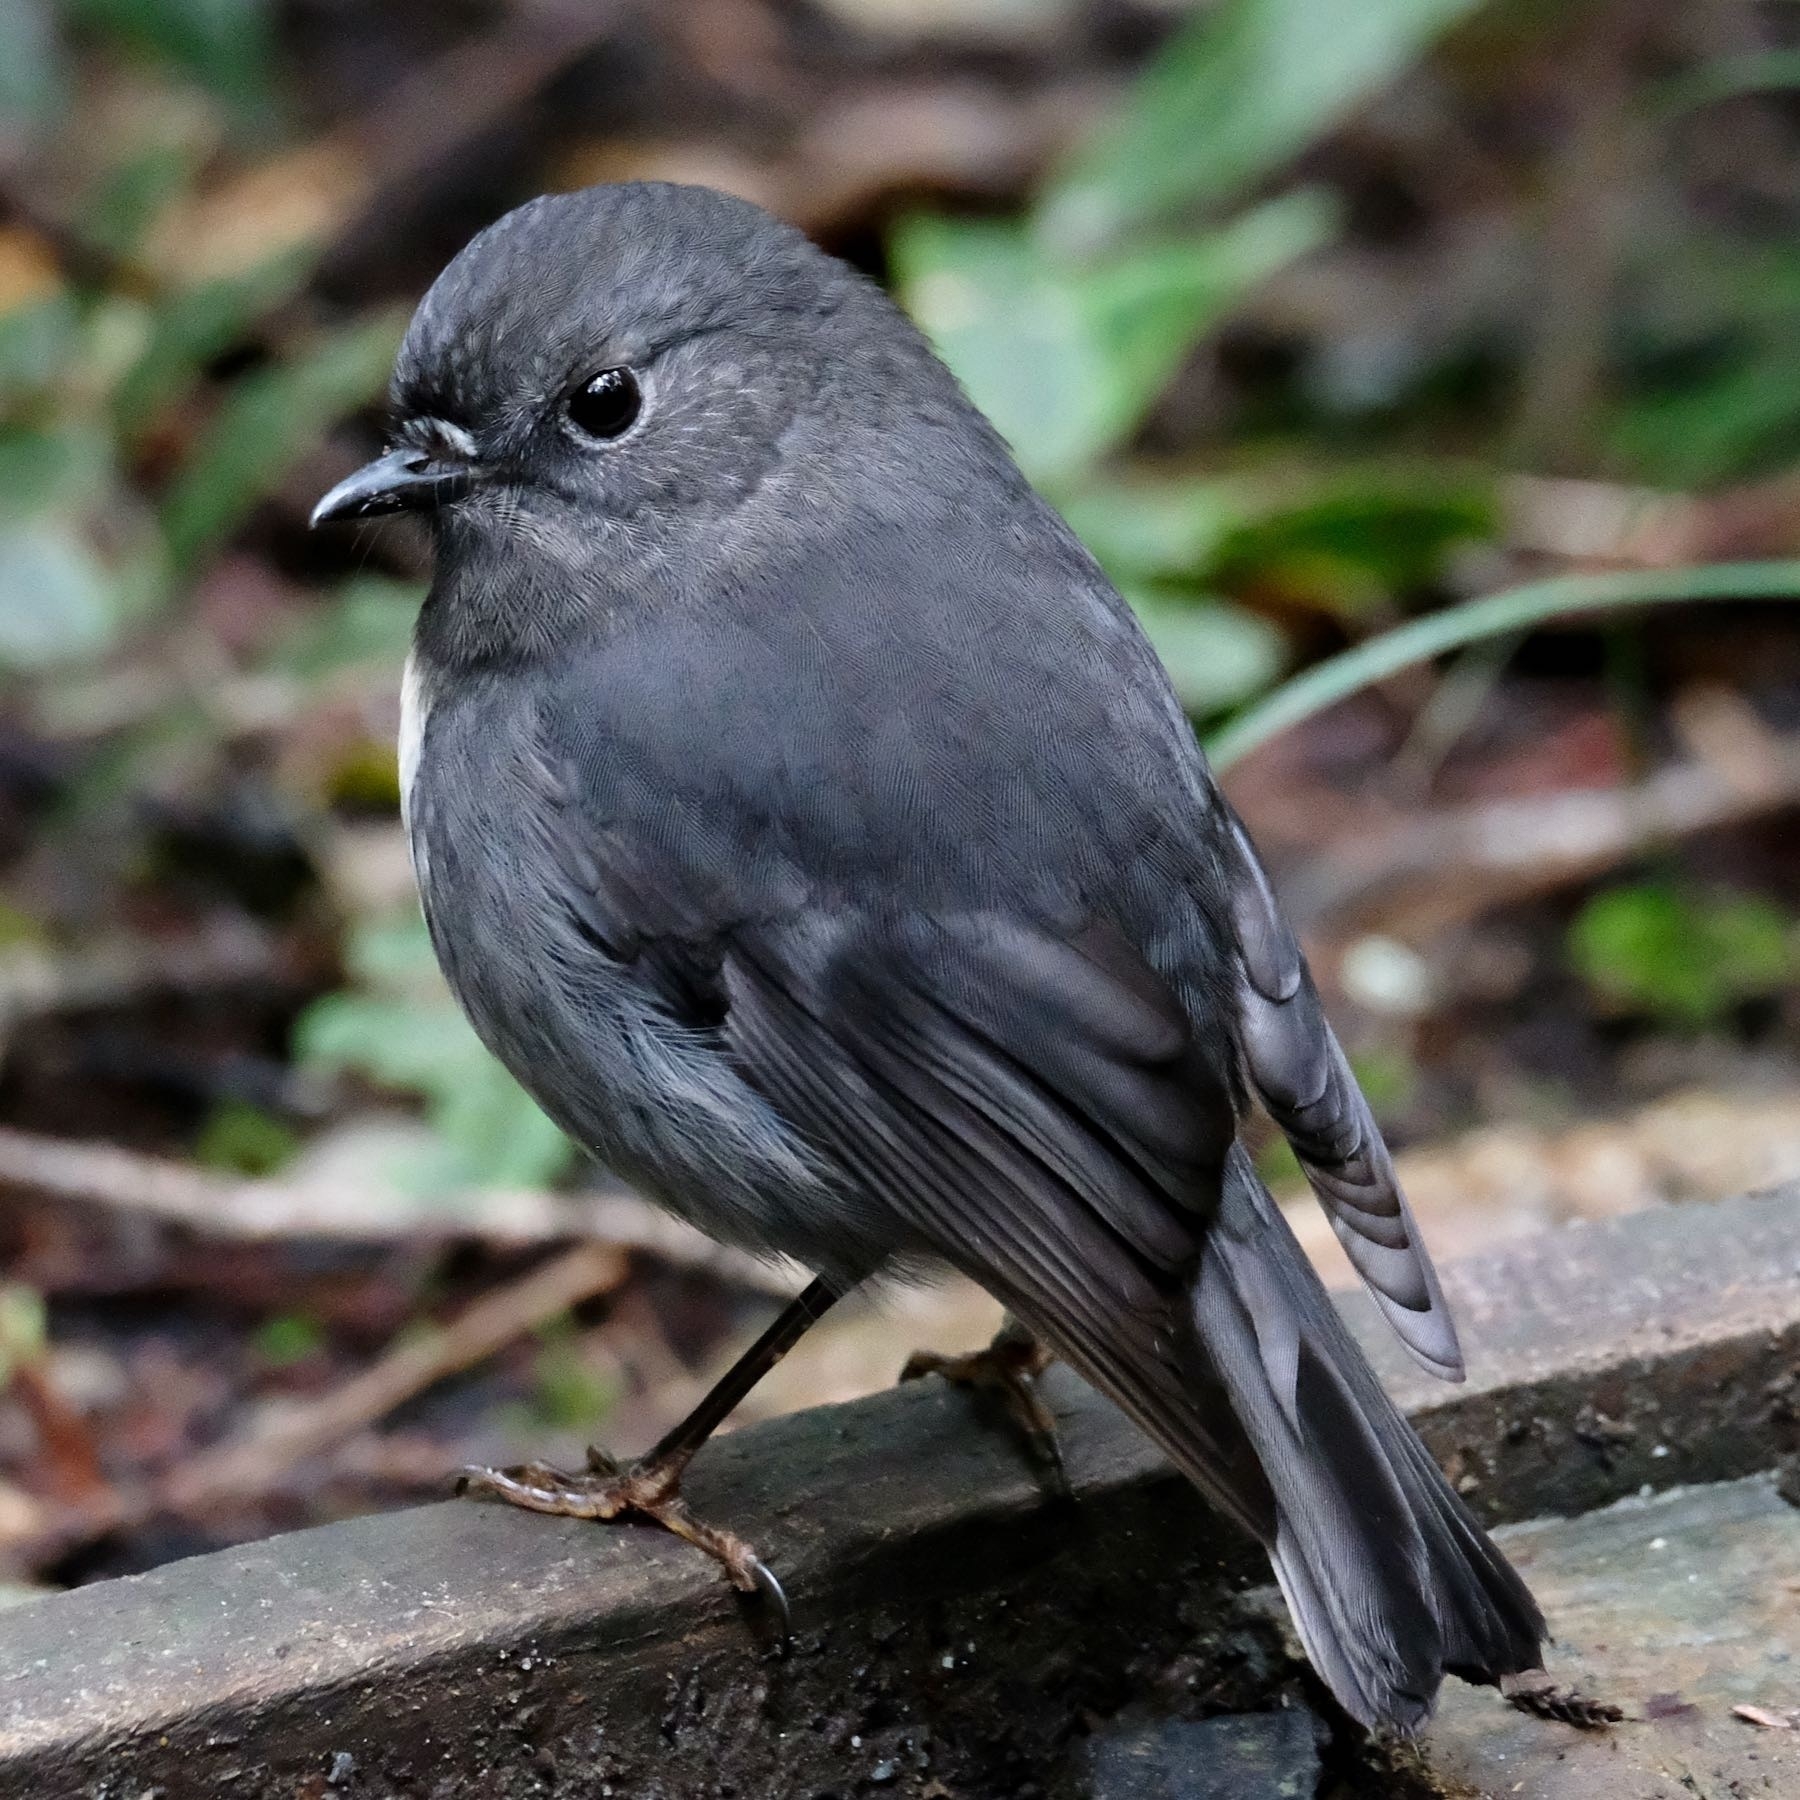 A small black bird with a beady eye. 